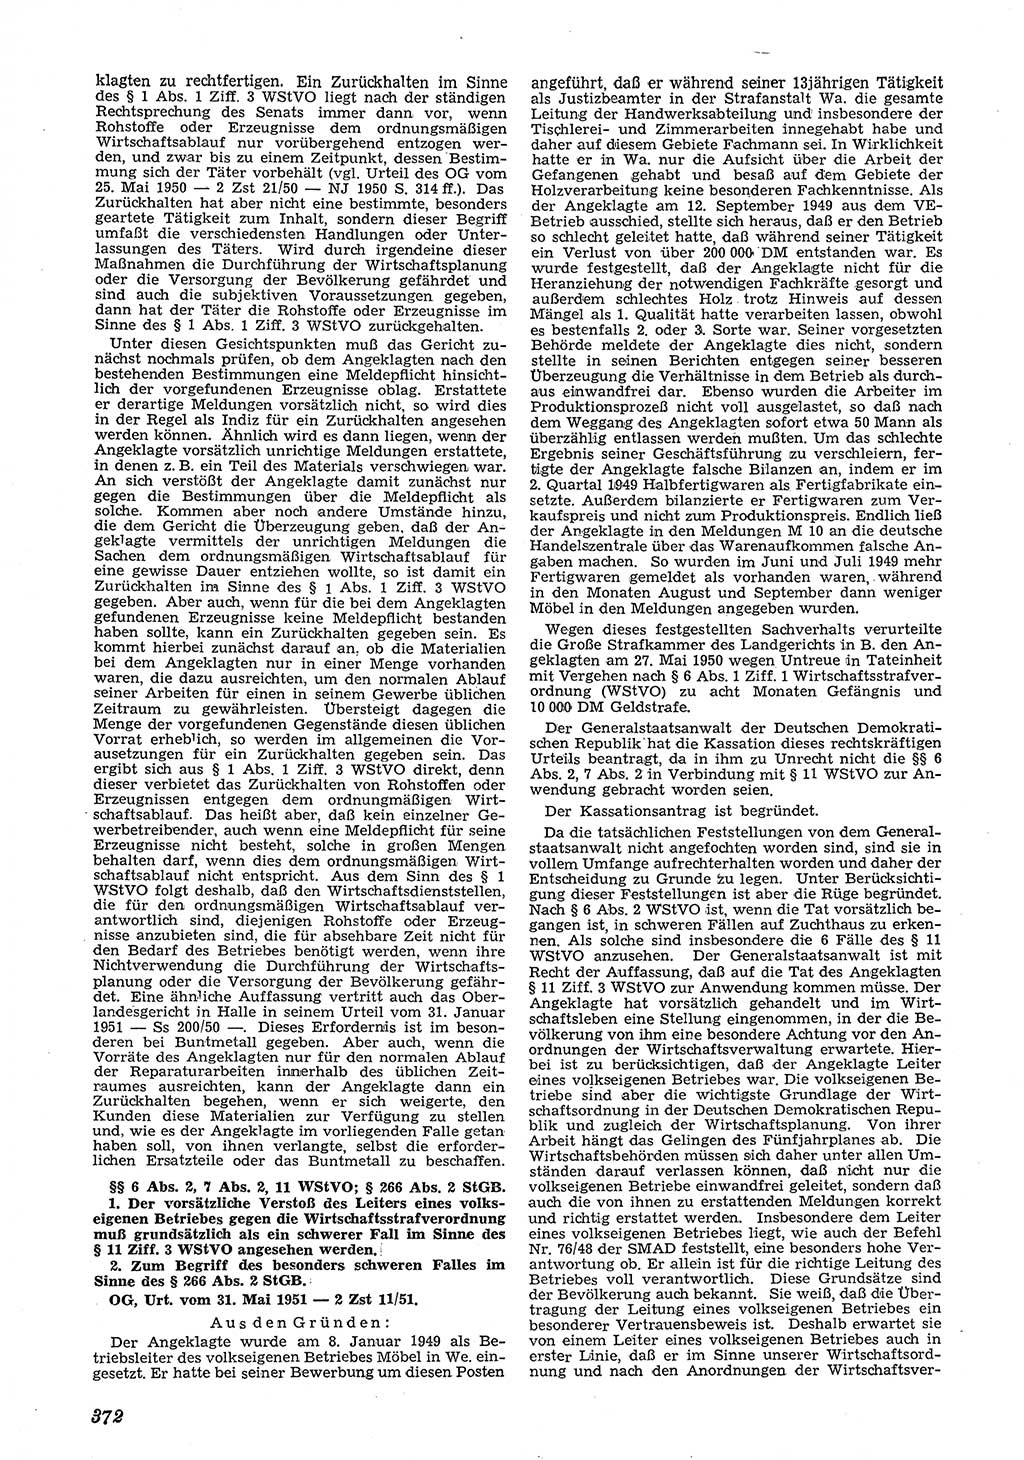 Neue Justiz (NJ), Zeitschrift für Recht und Rechtswissenschaft [Deutsche Demokratische Republik (DDR)], 5. Jahrgang 1951, Seite 372 (NJ DDR 1951, S. 372)